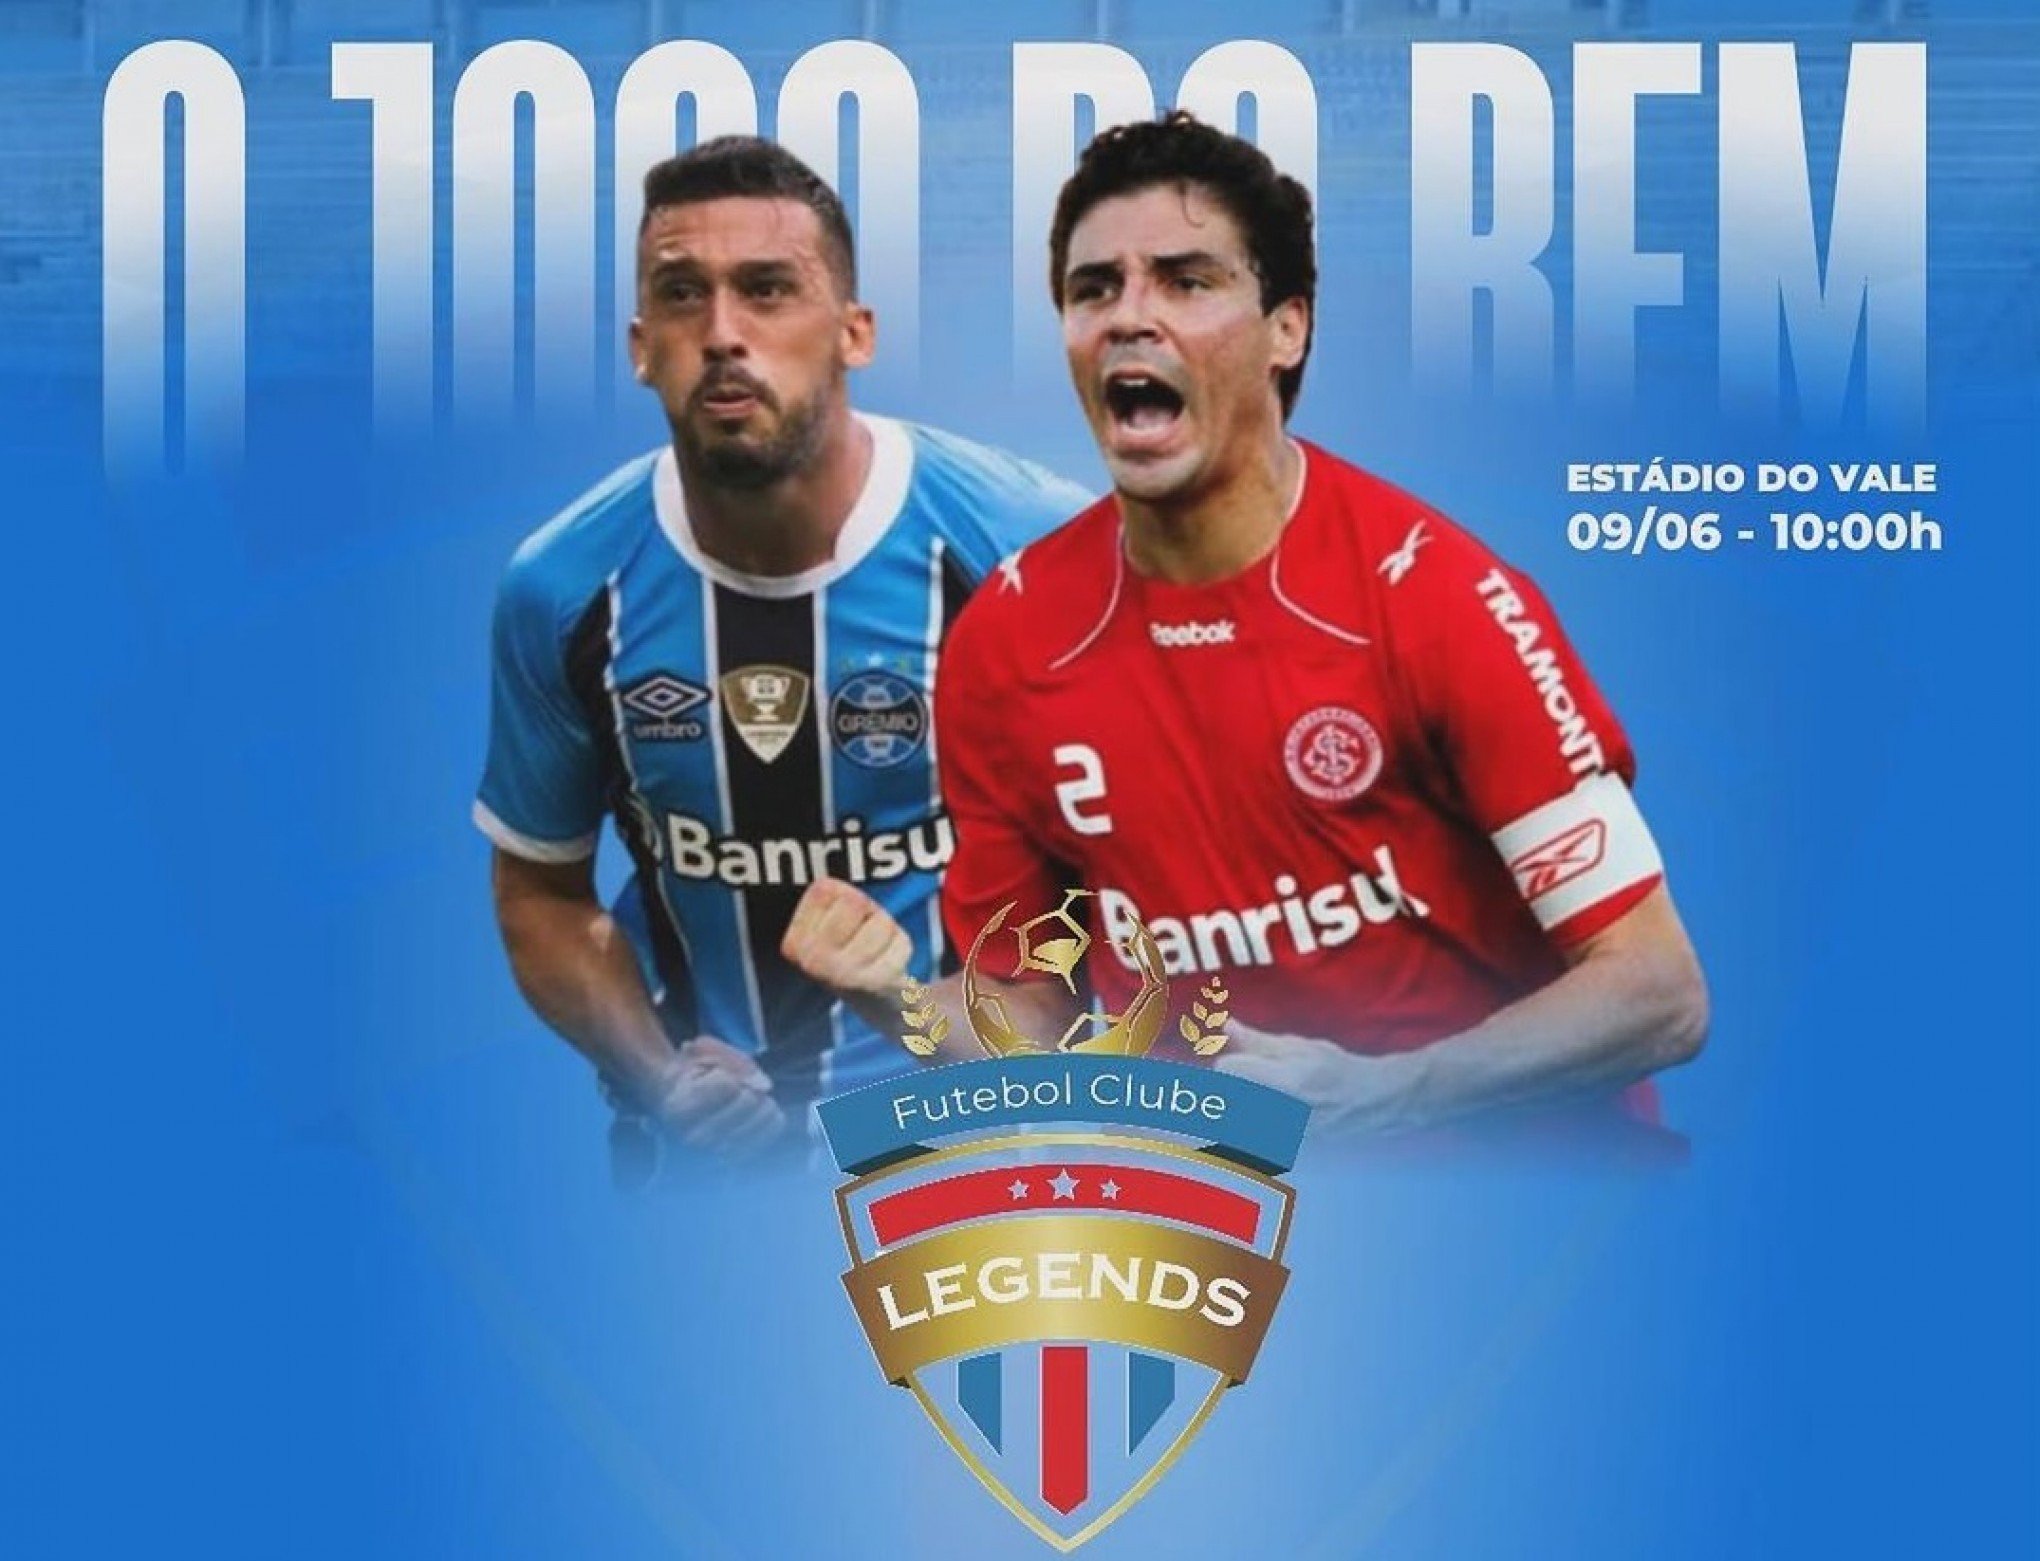 Bolívar e Edílson vão participar de jogo beneficente no Estádio do Vale neste domingo